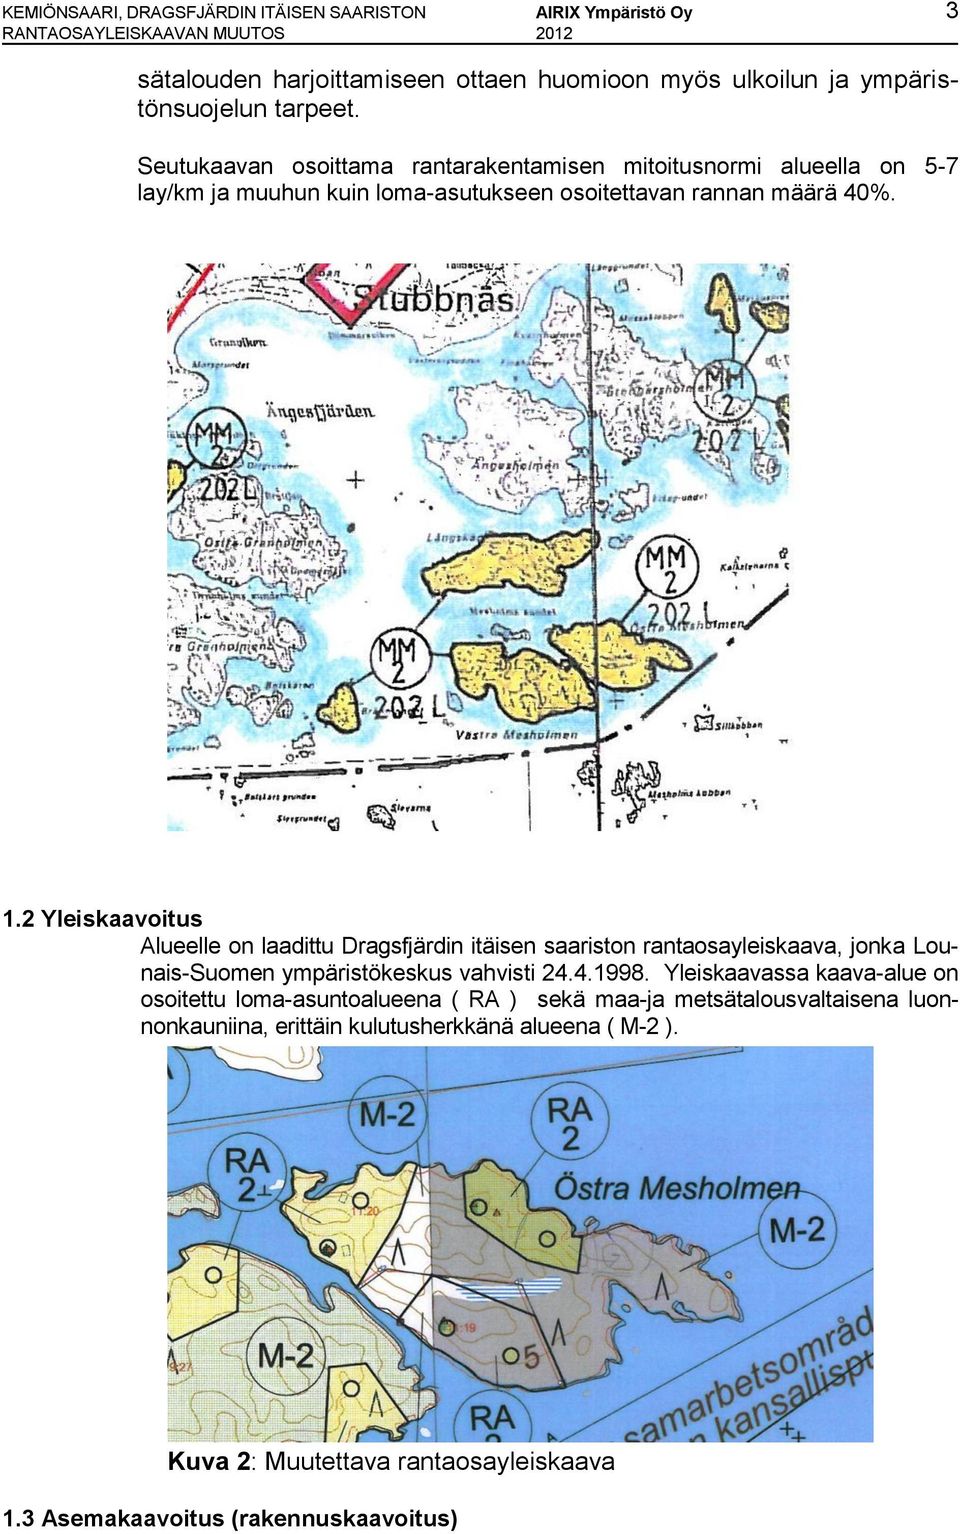 2 Yleiskaavoitus Alueelle on laadittu Dragsfjärdin itäisen saariston rantaosayleiskaava, jonka Lounais-Suomen ympäristökeskus vahvisti 24.4.1998.